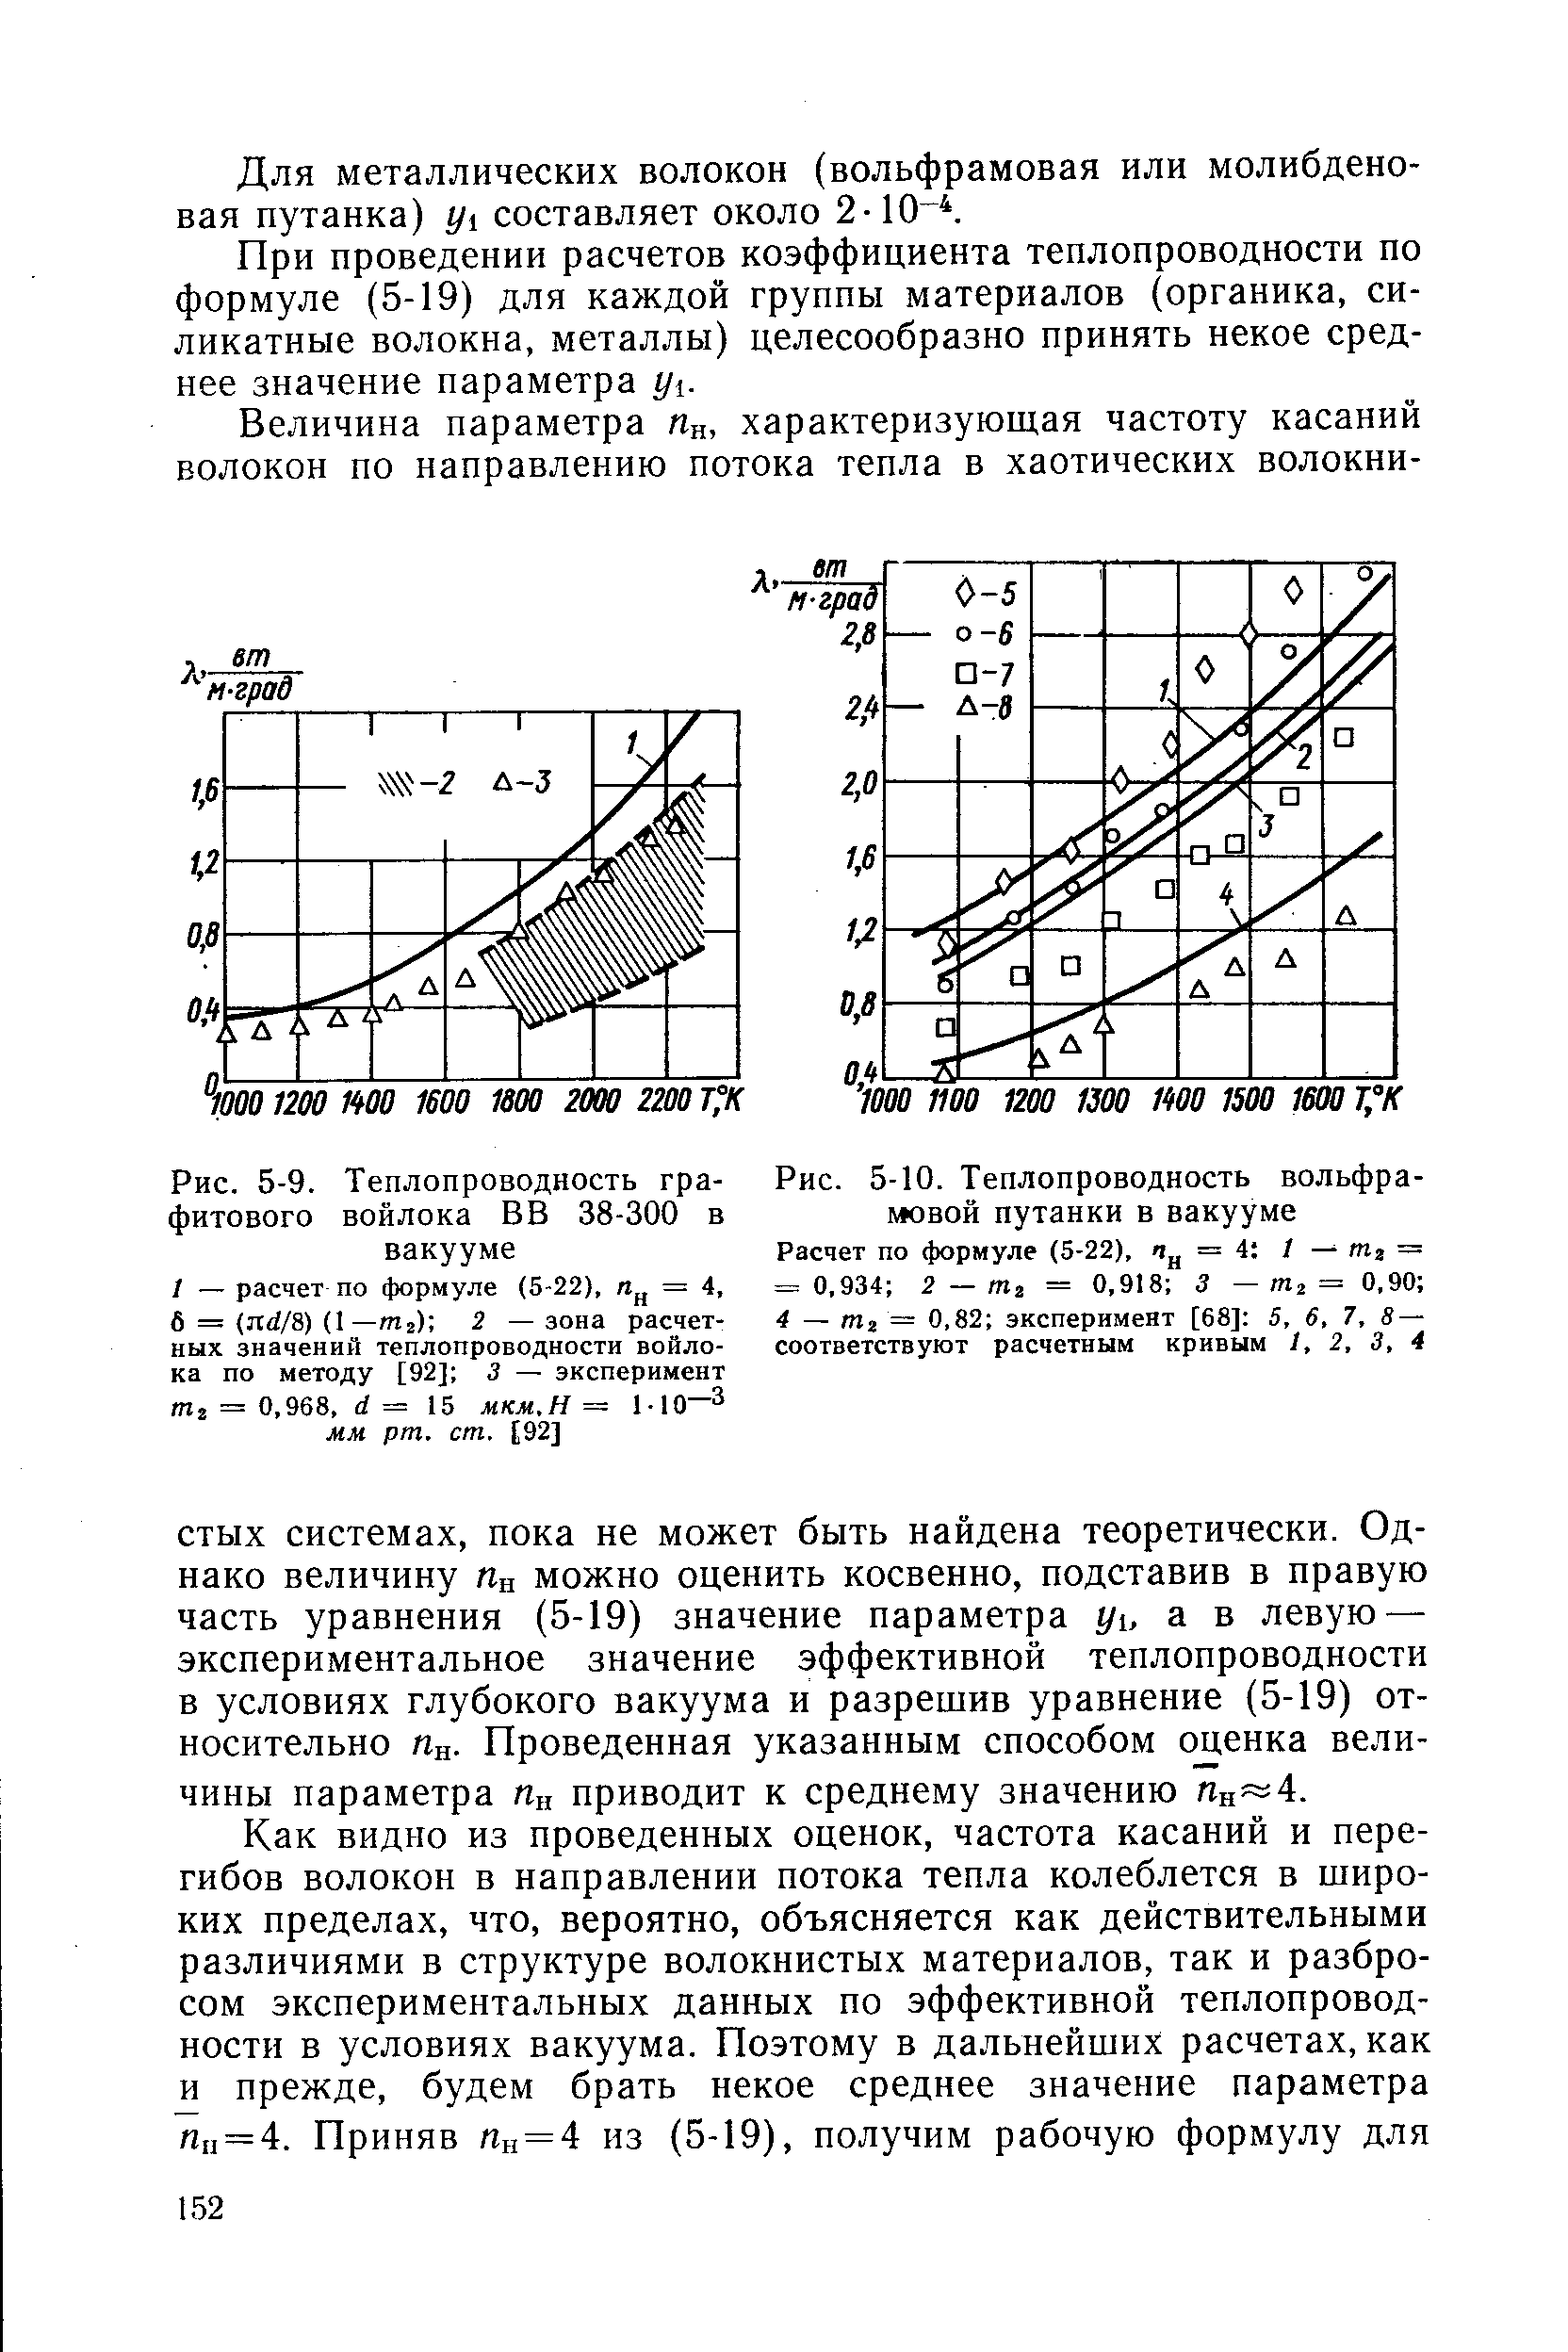 Рис. 5-9. Теплопроводность графитового войлока ВВ 38-300 в вакууме
